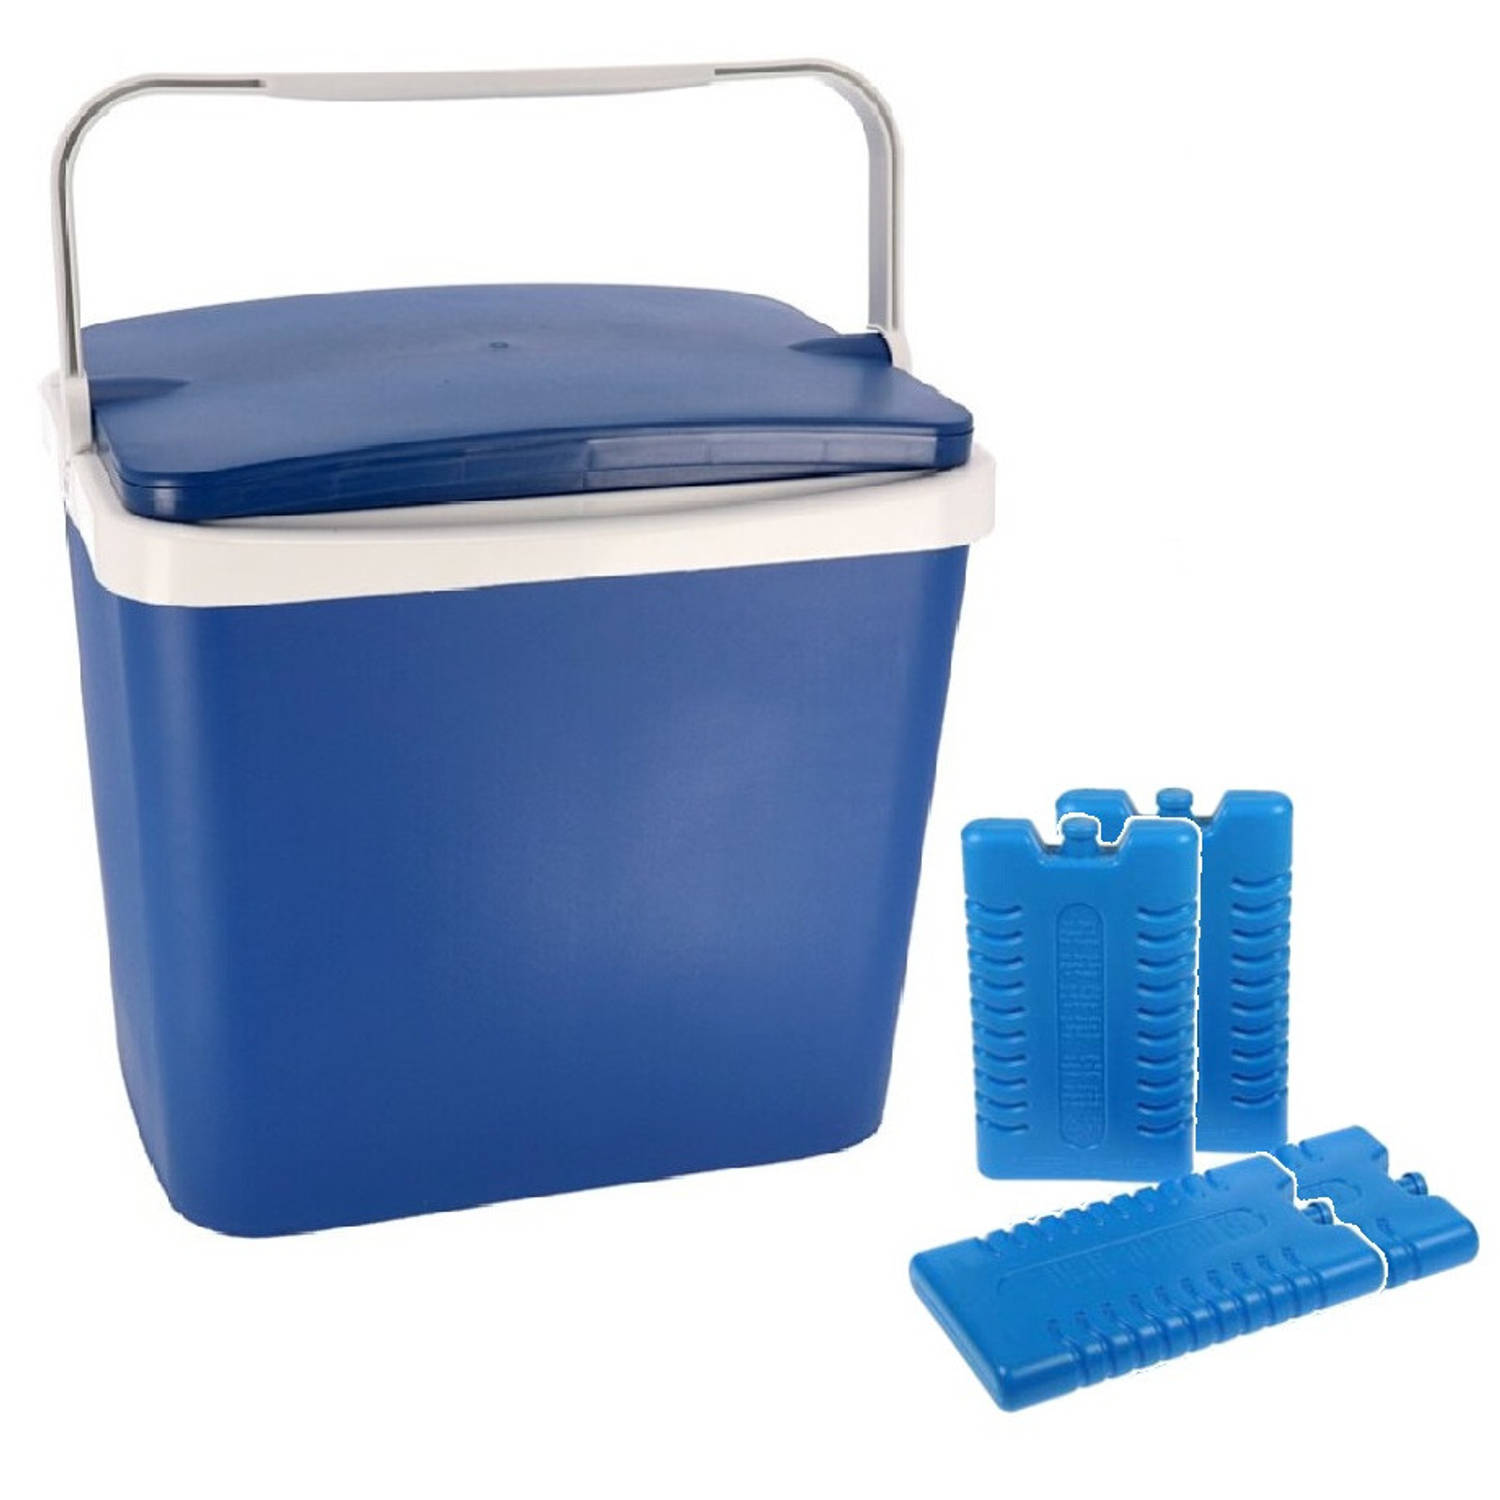 Koelbox donkerblauw 29 liter 40 x 29 x 44 cm incl. 4 koelelementen - Koelboxen